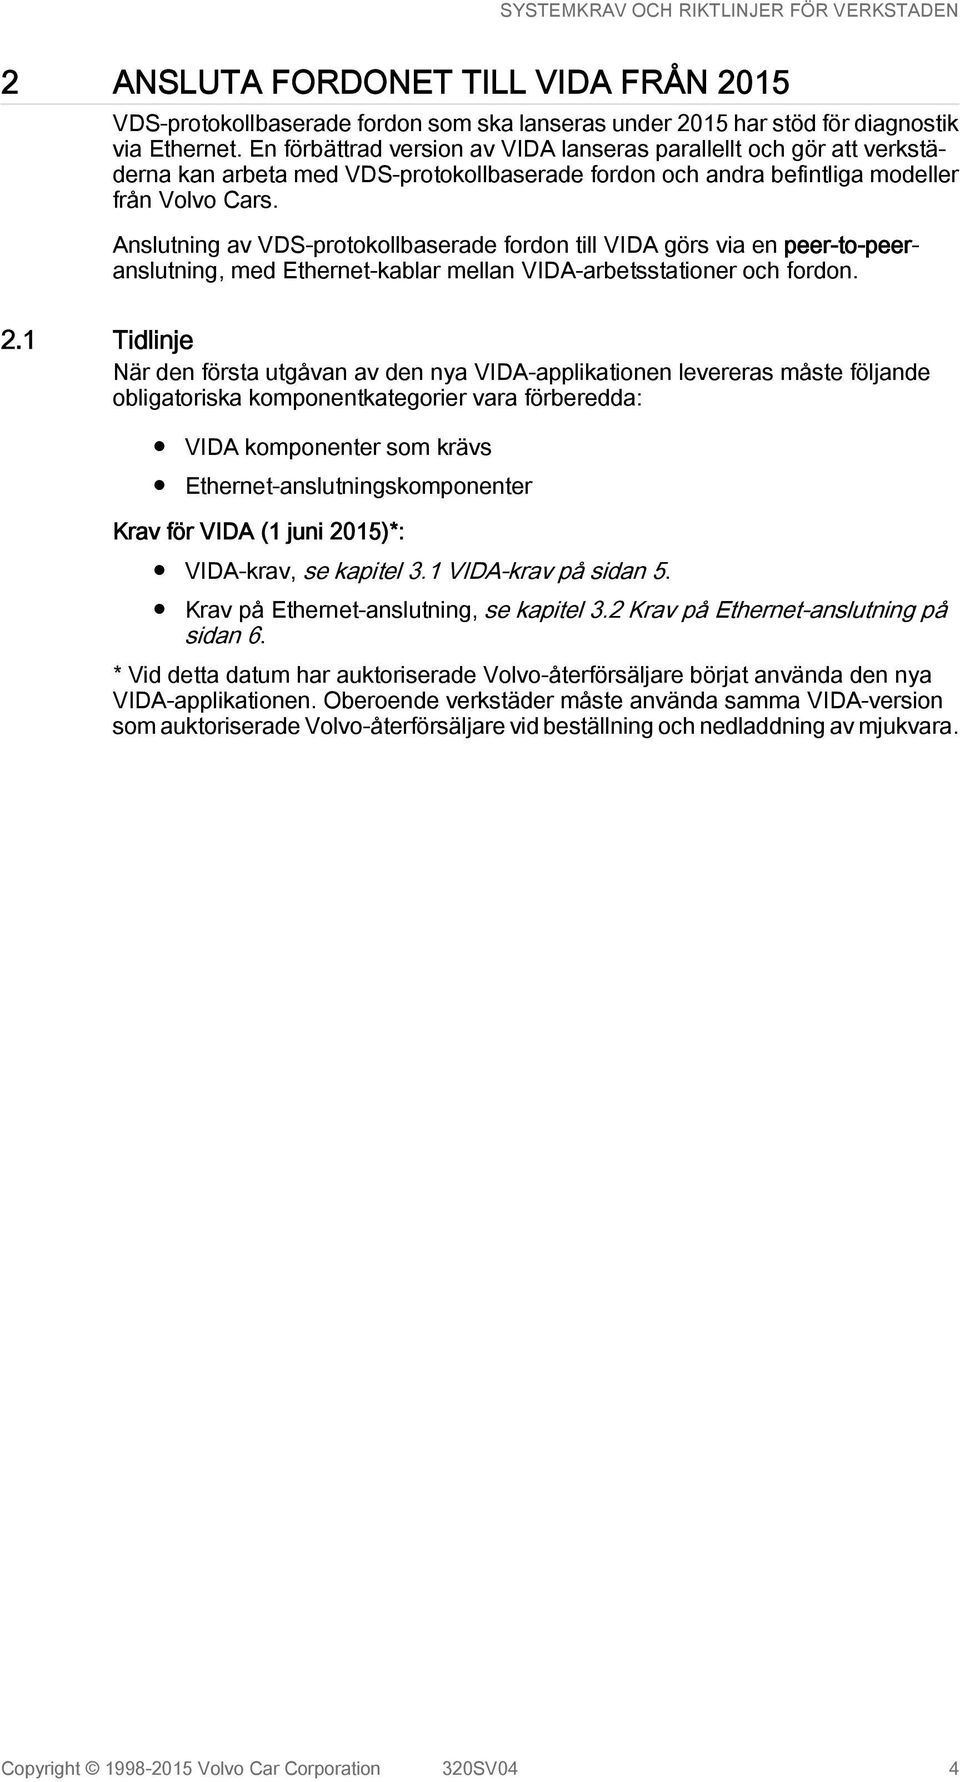 Anslutning av VDS-protokollbaserade fordon till VIDA görs via en peer-to-peeranslutning, med Ethernet-kablar mellan VIDA-arbetsstationer och fordon. 2.